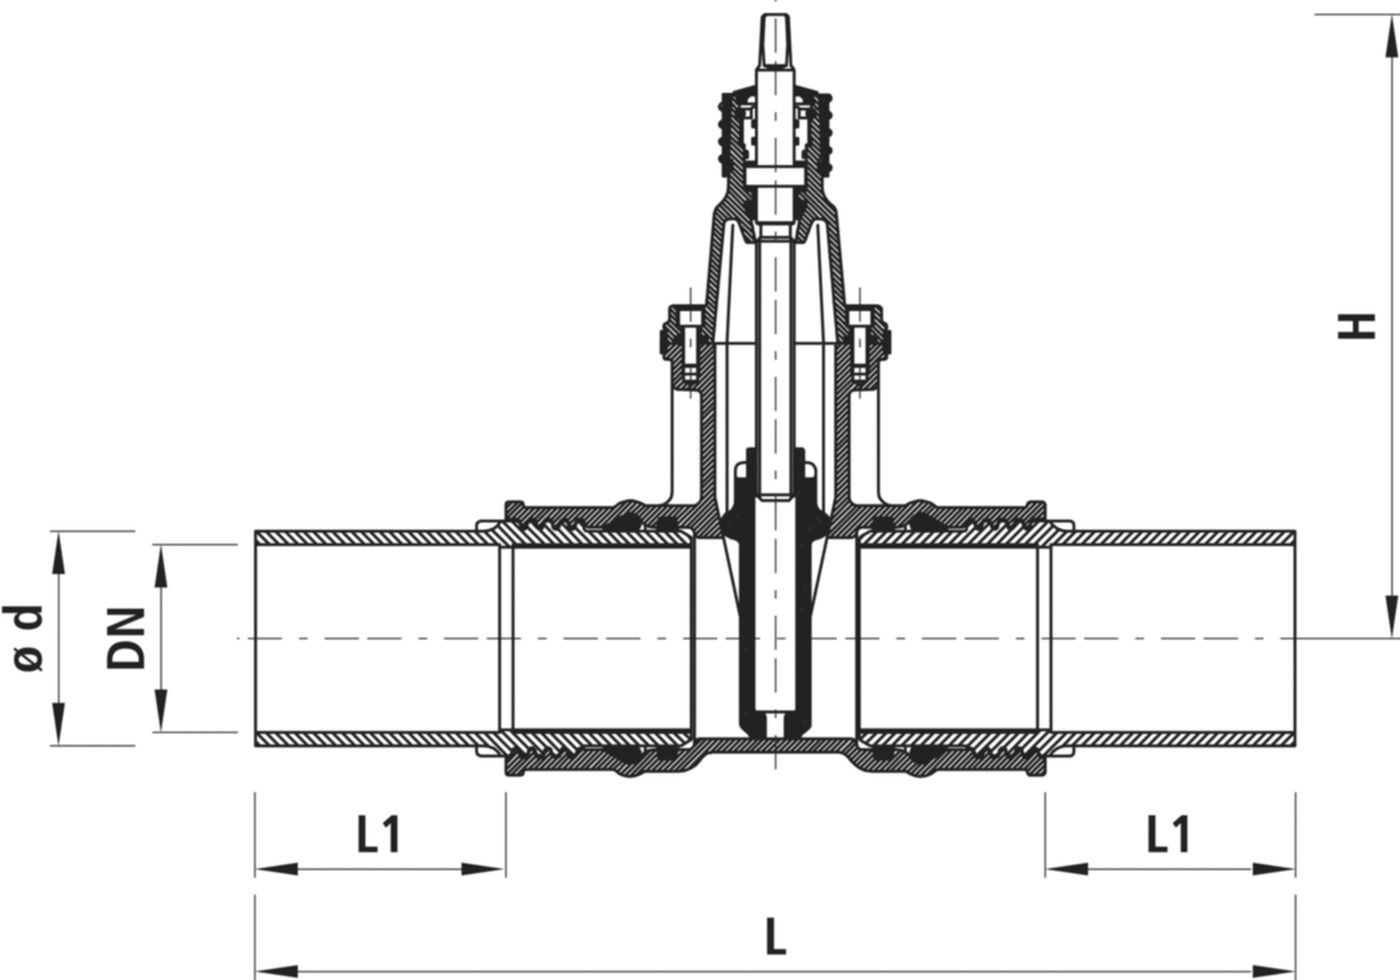 Einschweiss-Schieber für Gas S8 4816 DN 150 / d 160mm - Hawle Armaturen